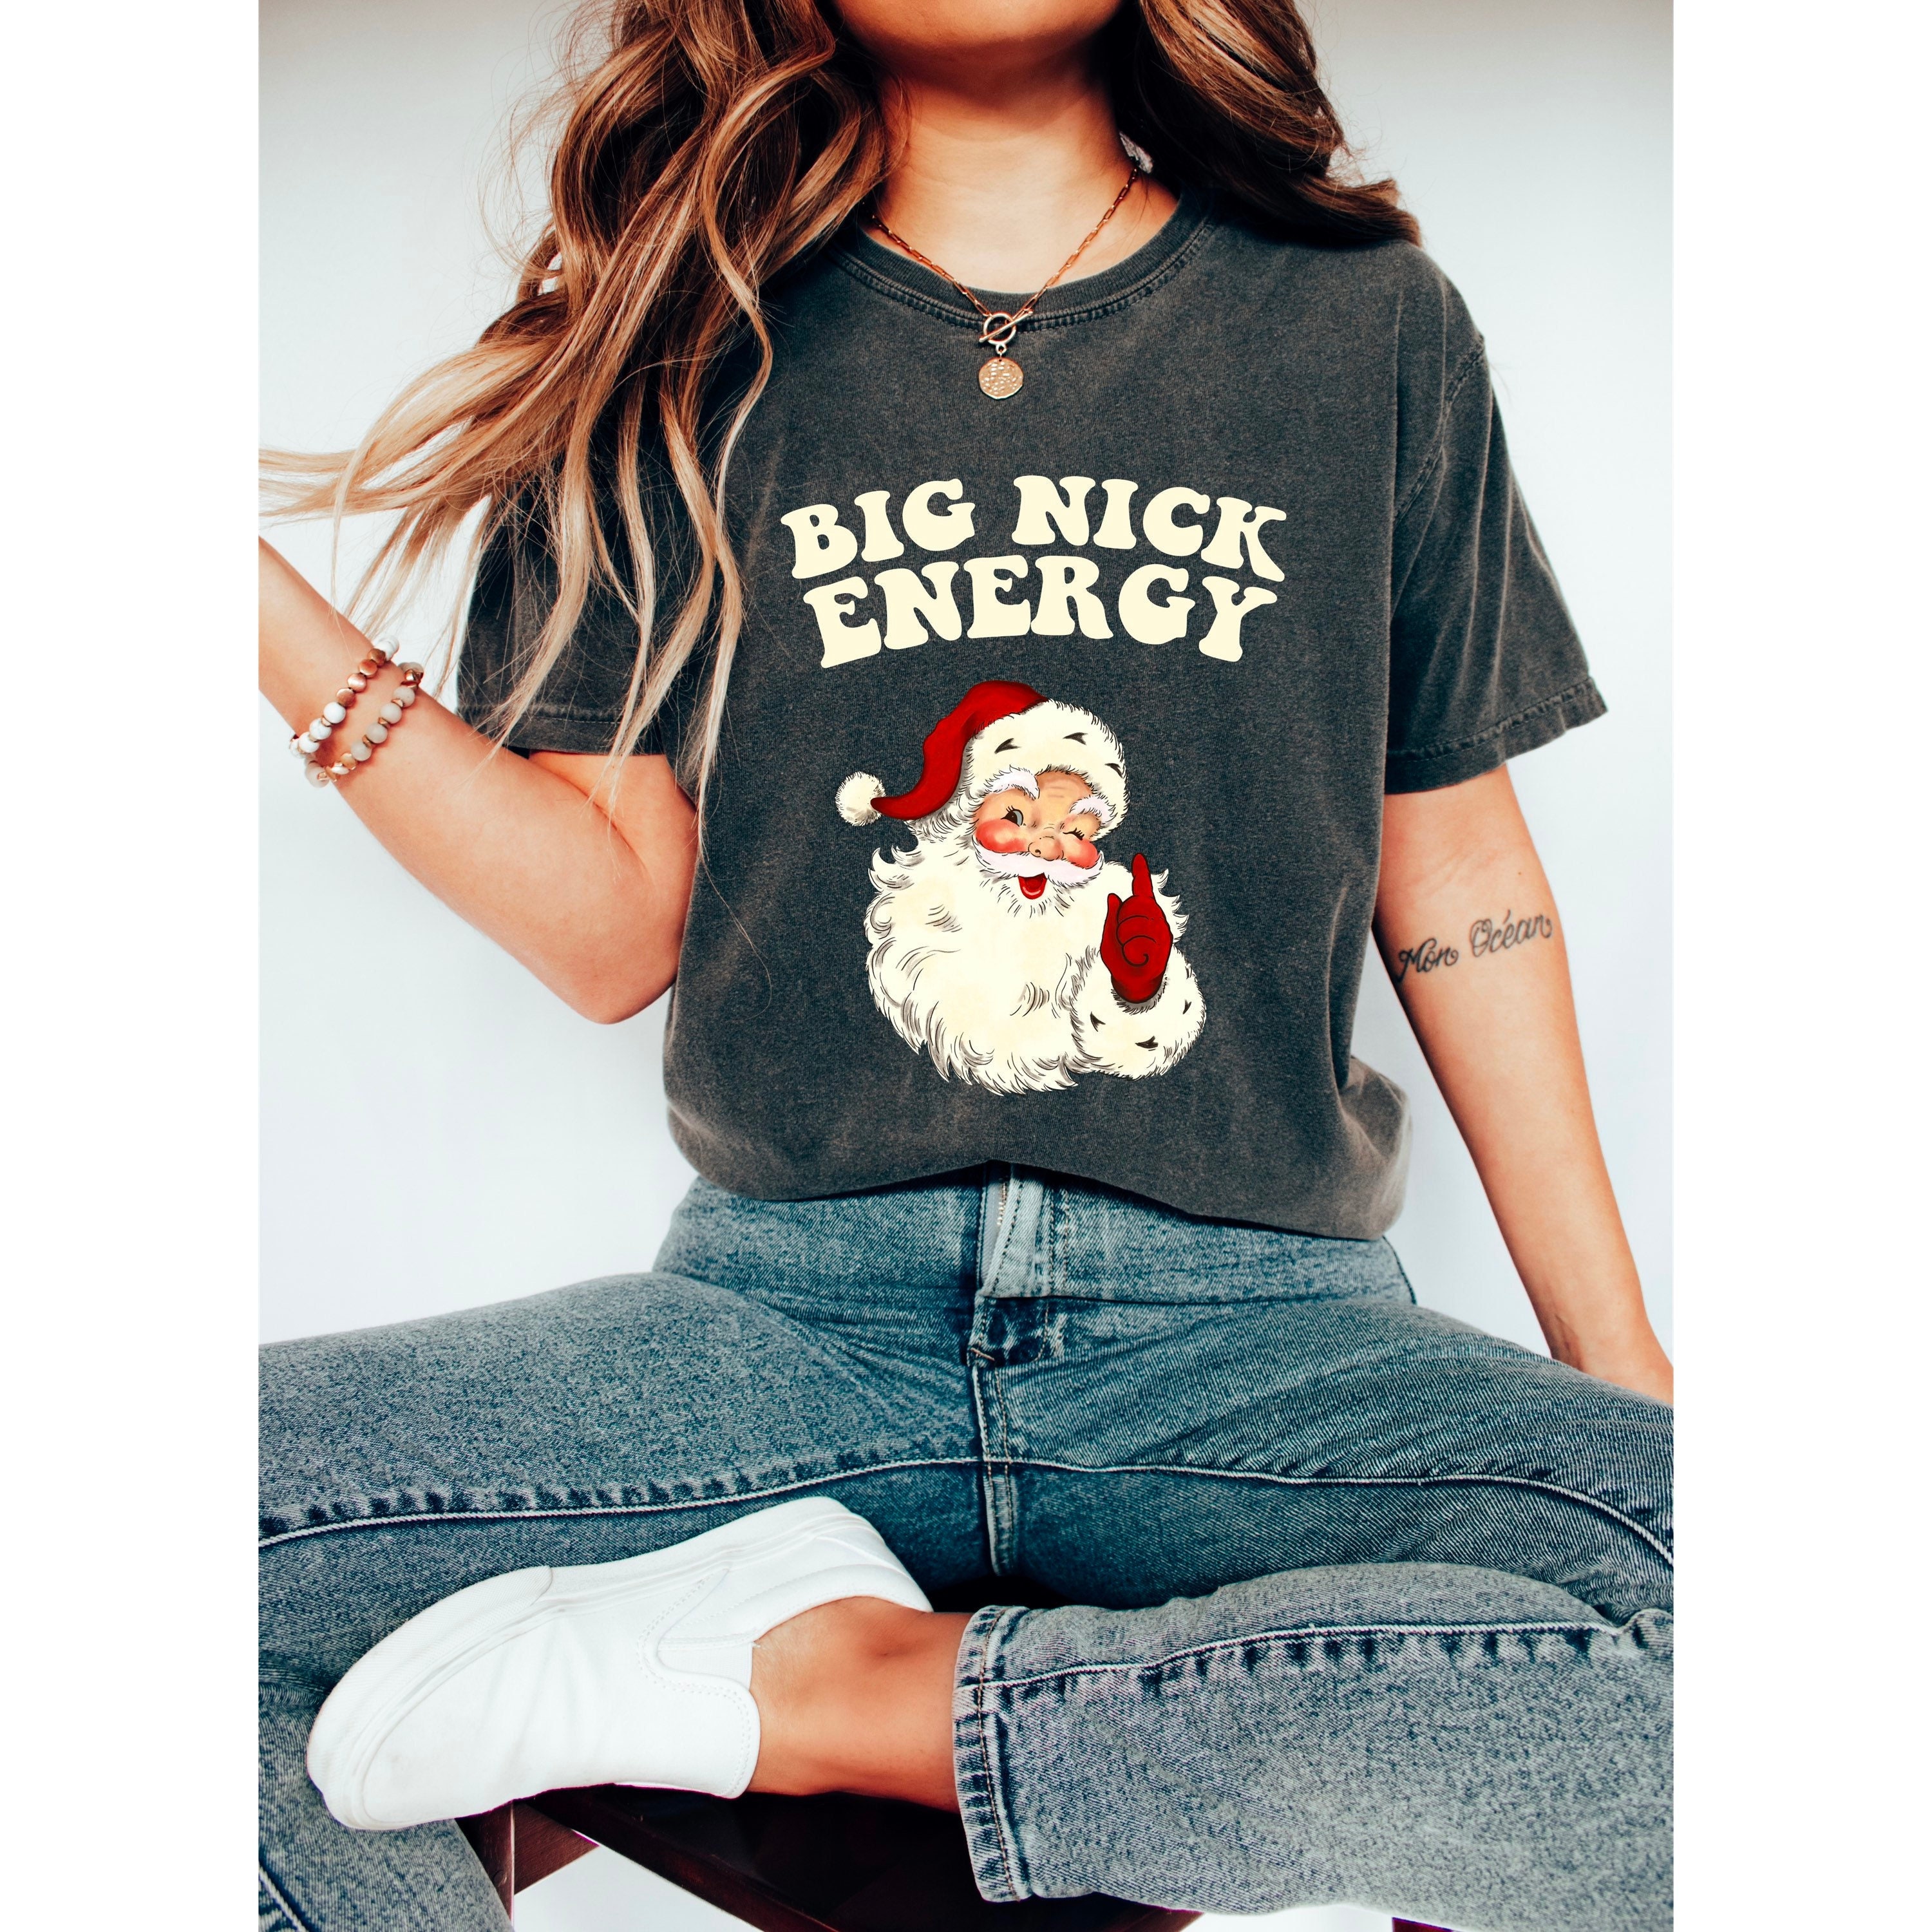 Discover Big Nick Energy Shirt, Christmas Comfort Color Shirt, Retro Christmas Tee